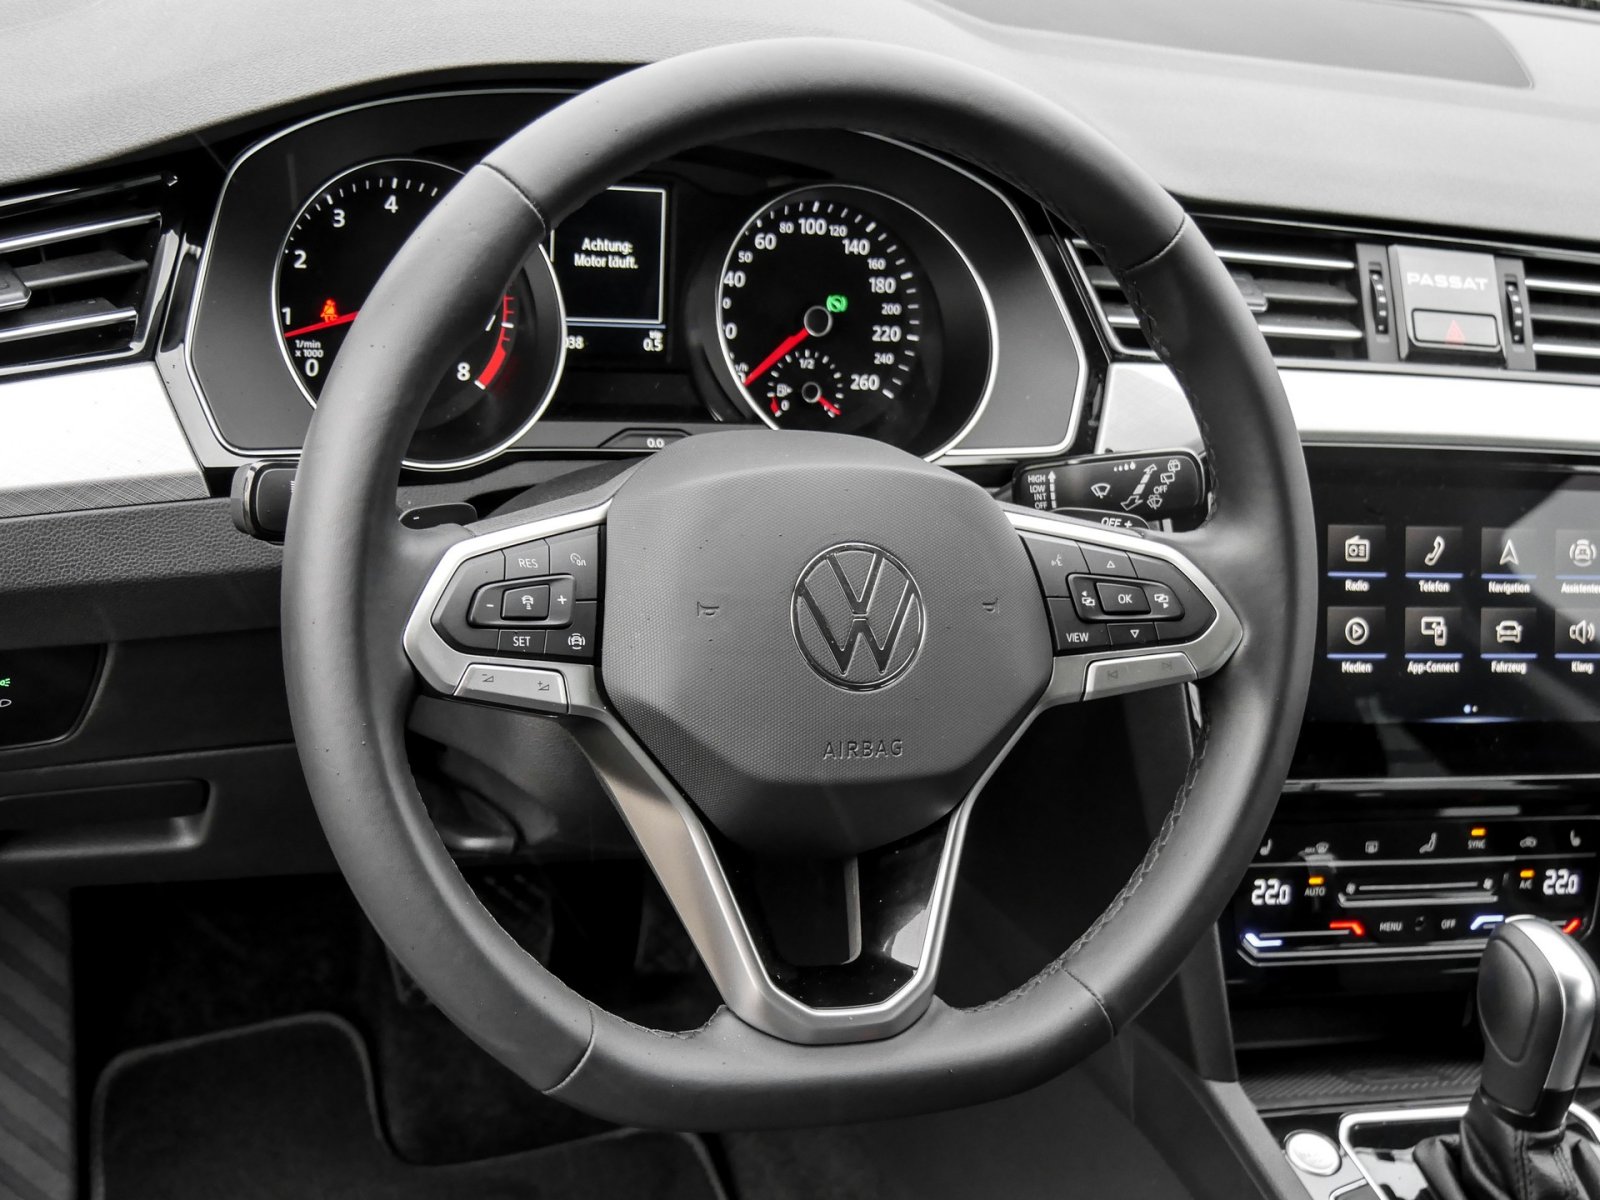 Volkswagen Passat Variant Business